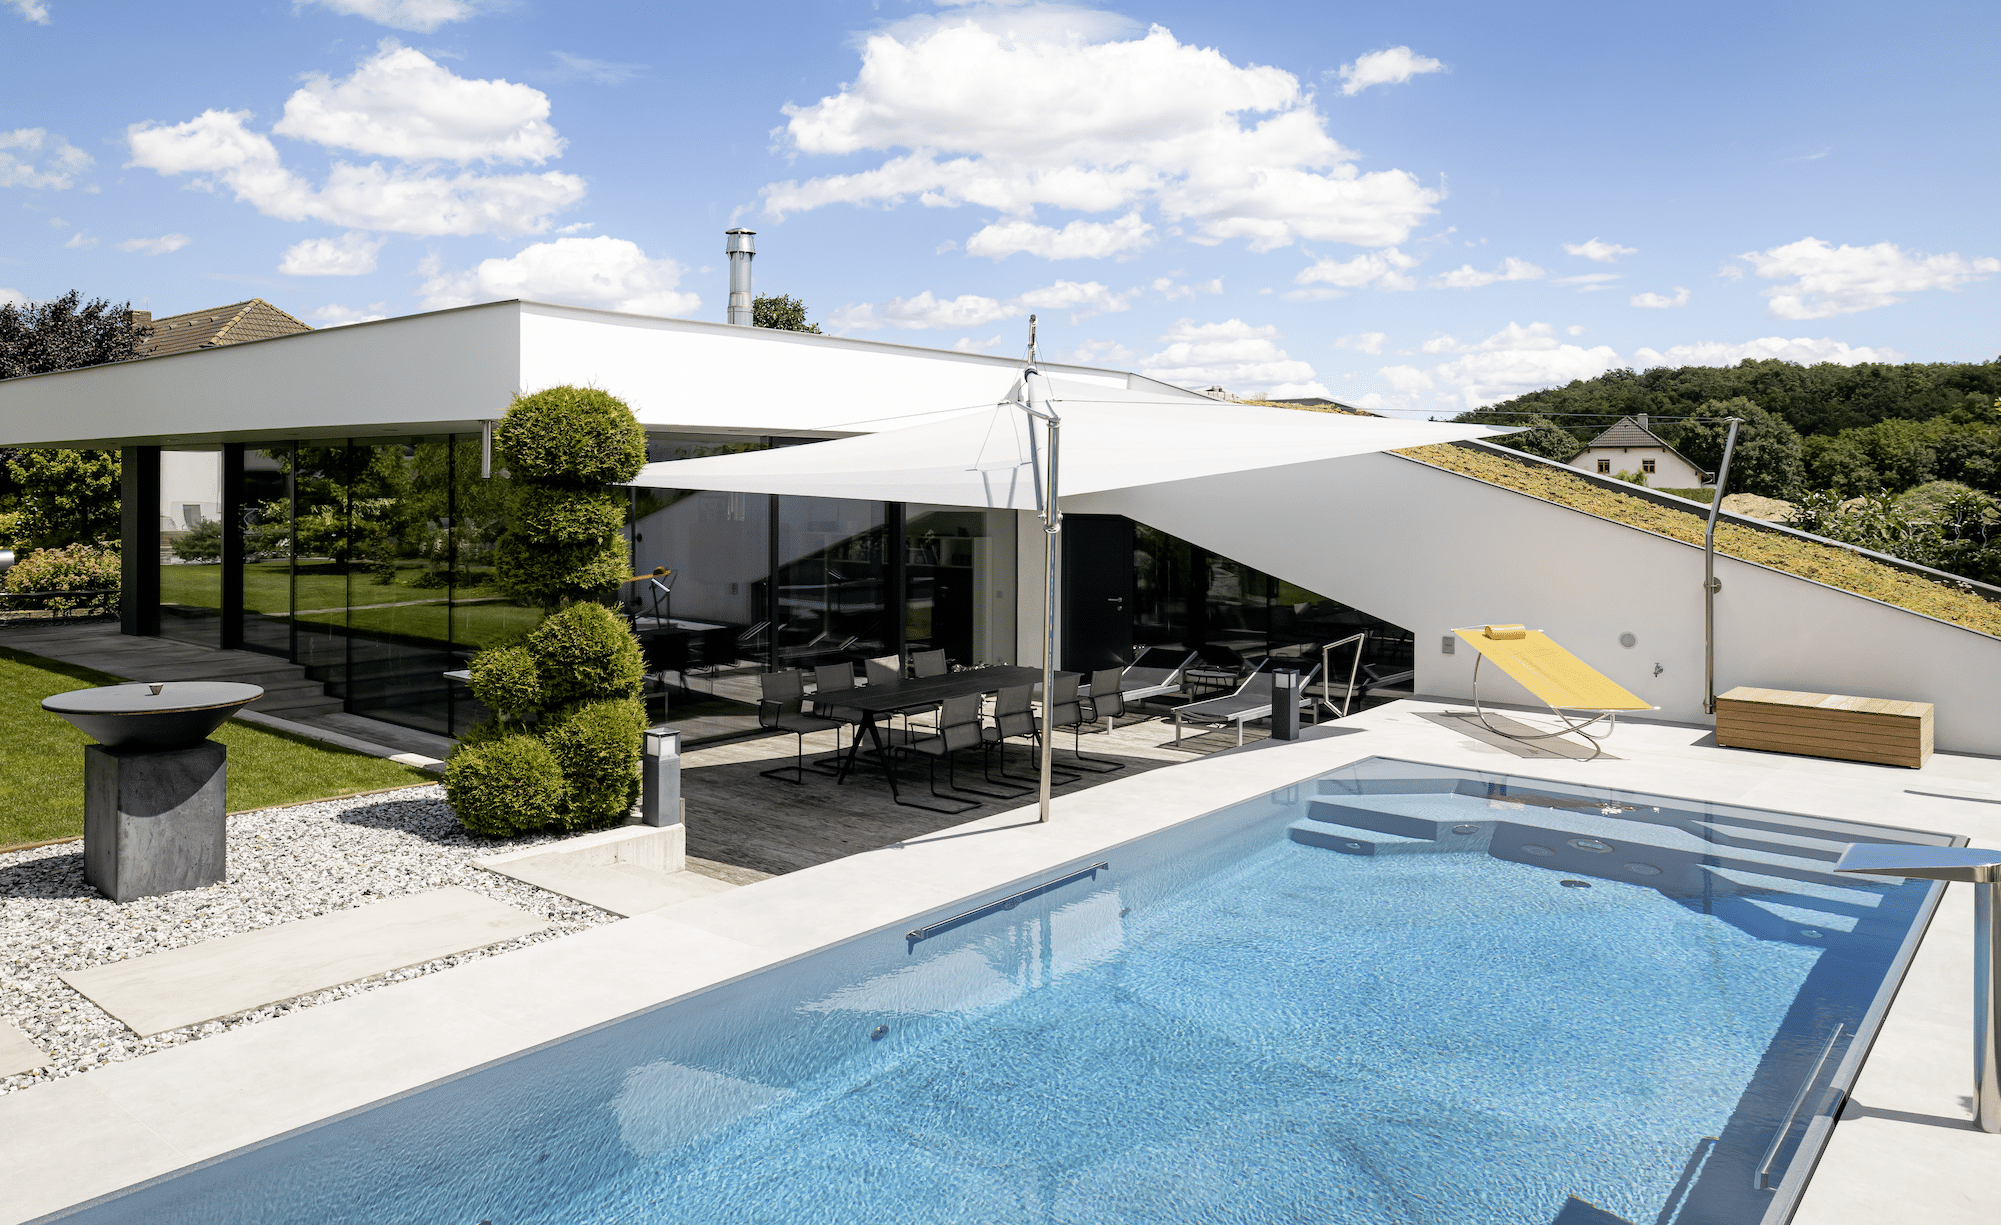 Swimmingpool nebst großzügiger Terrasse mit modernem Sonnensegel von SunSquare.